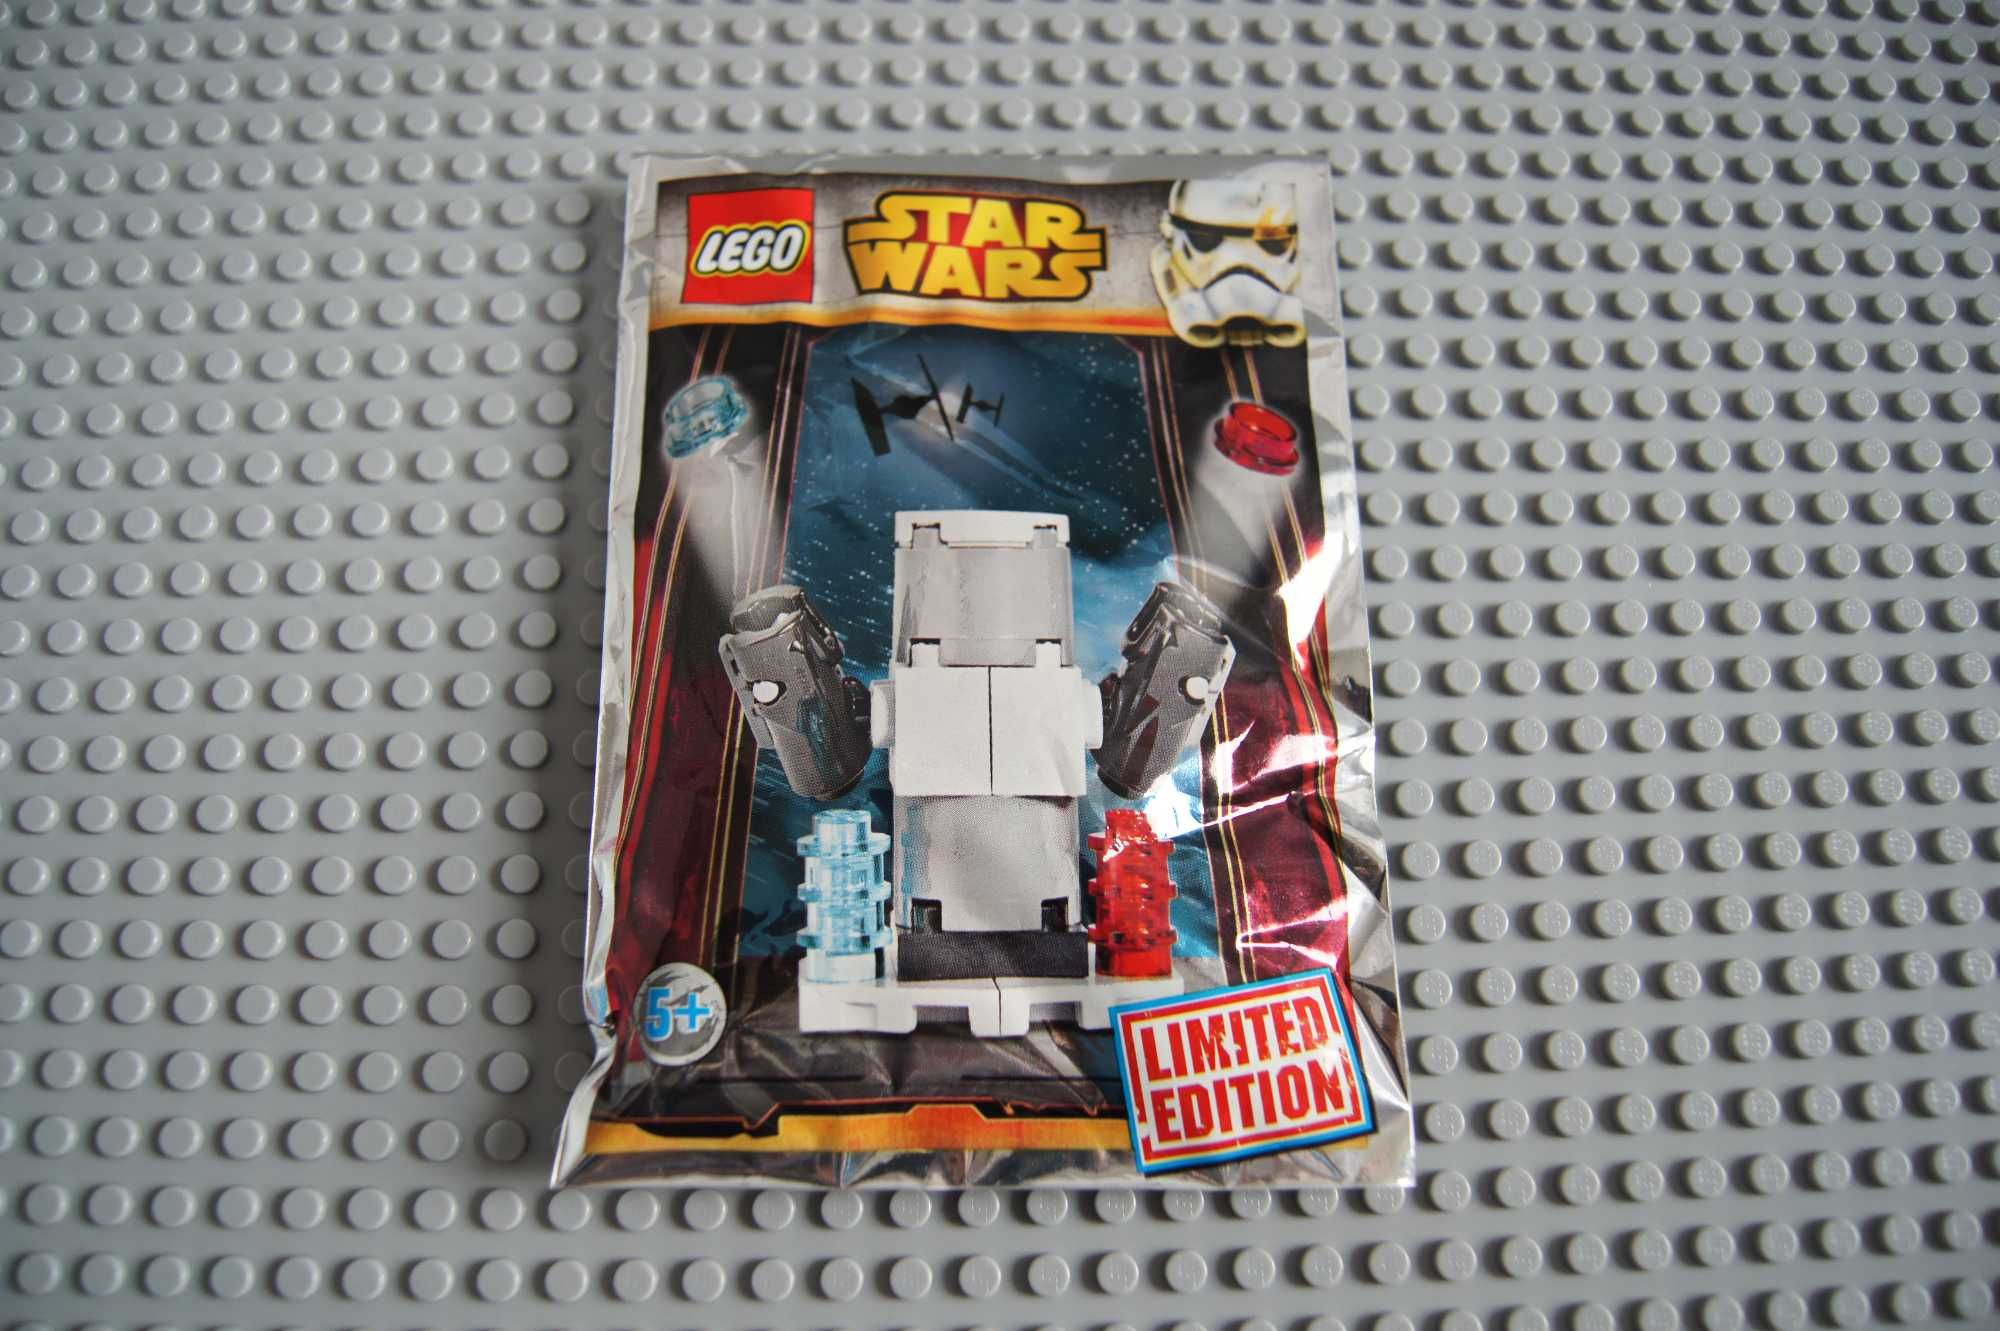 Lego Star Wars Limited Edition